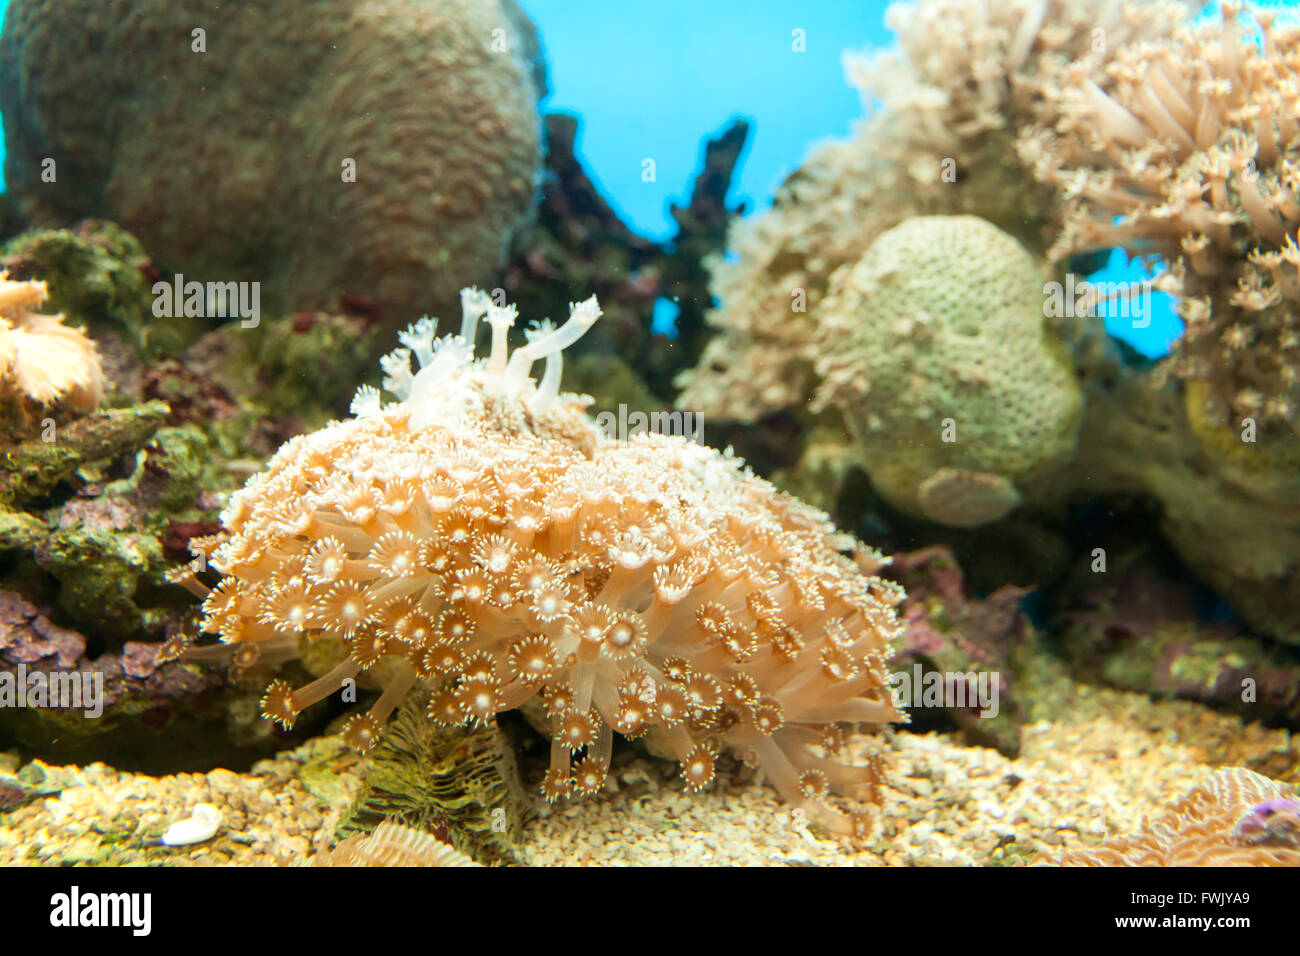 Anemonen sind in freier Wildbahn, Undersea in tropischem Klima weit verbreitet. Stockfoto